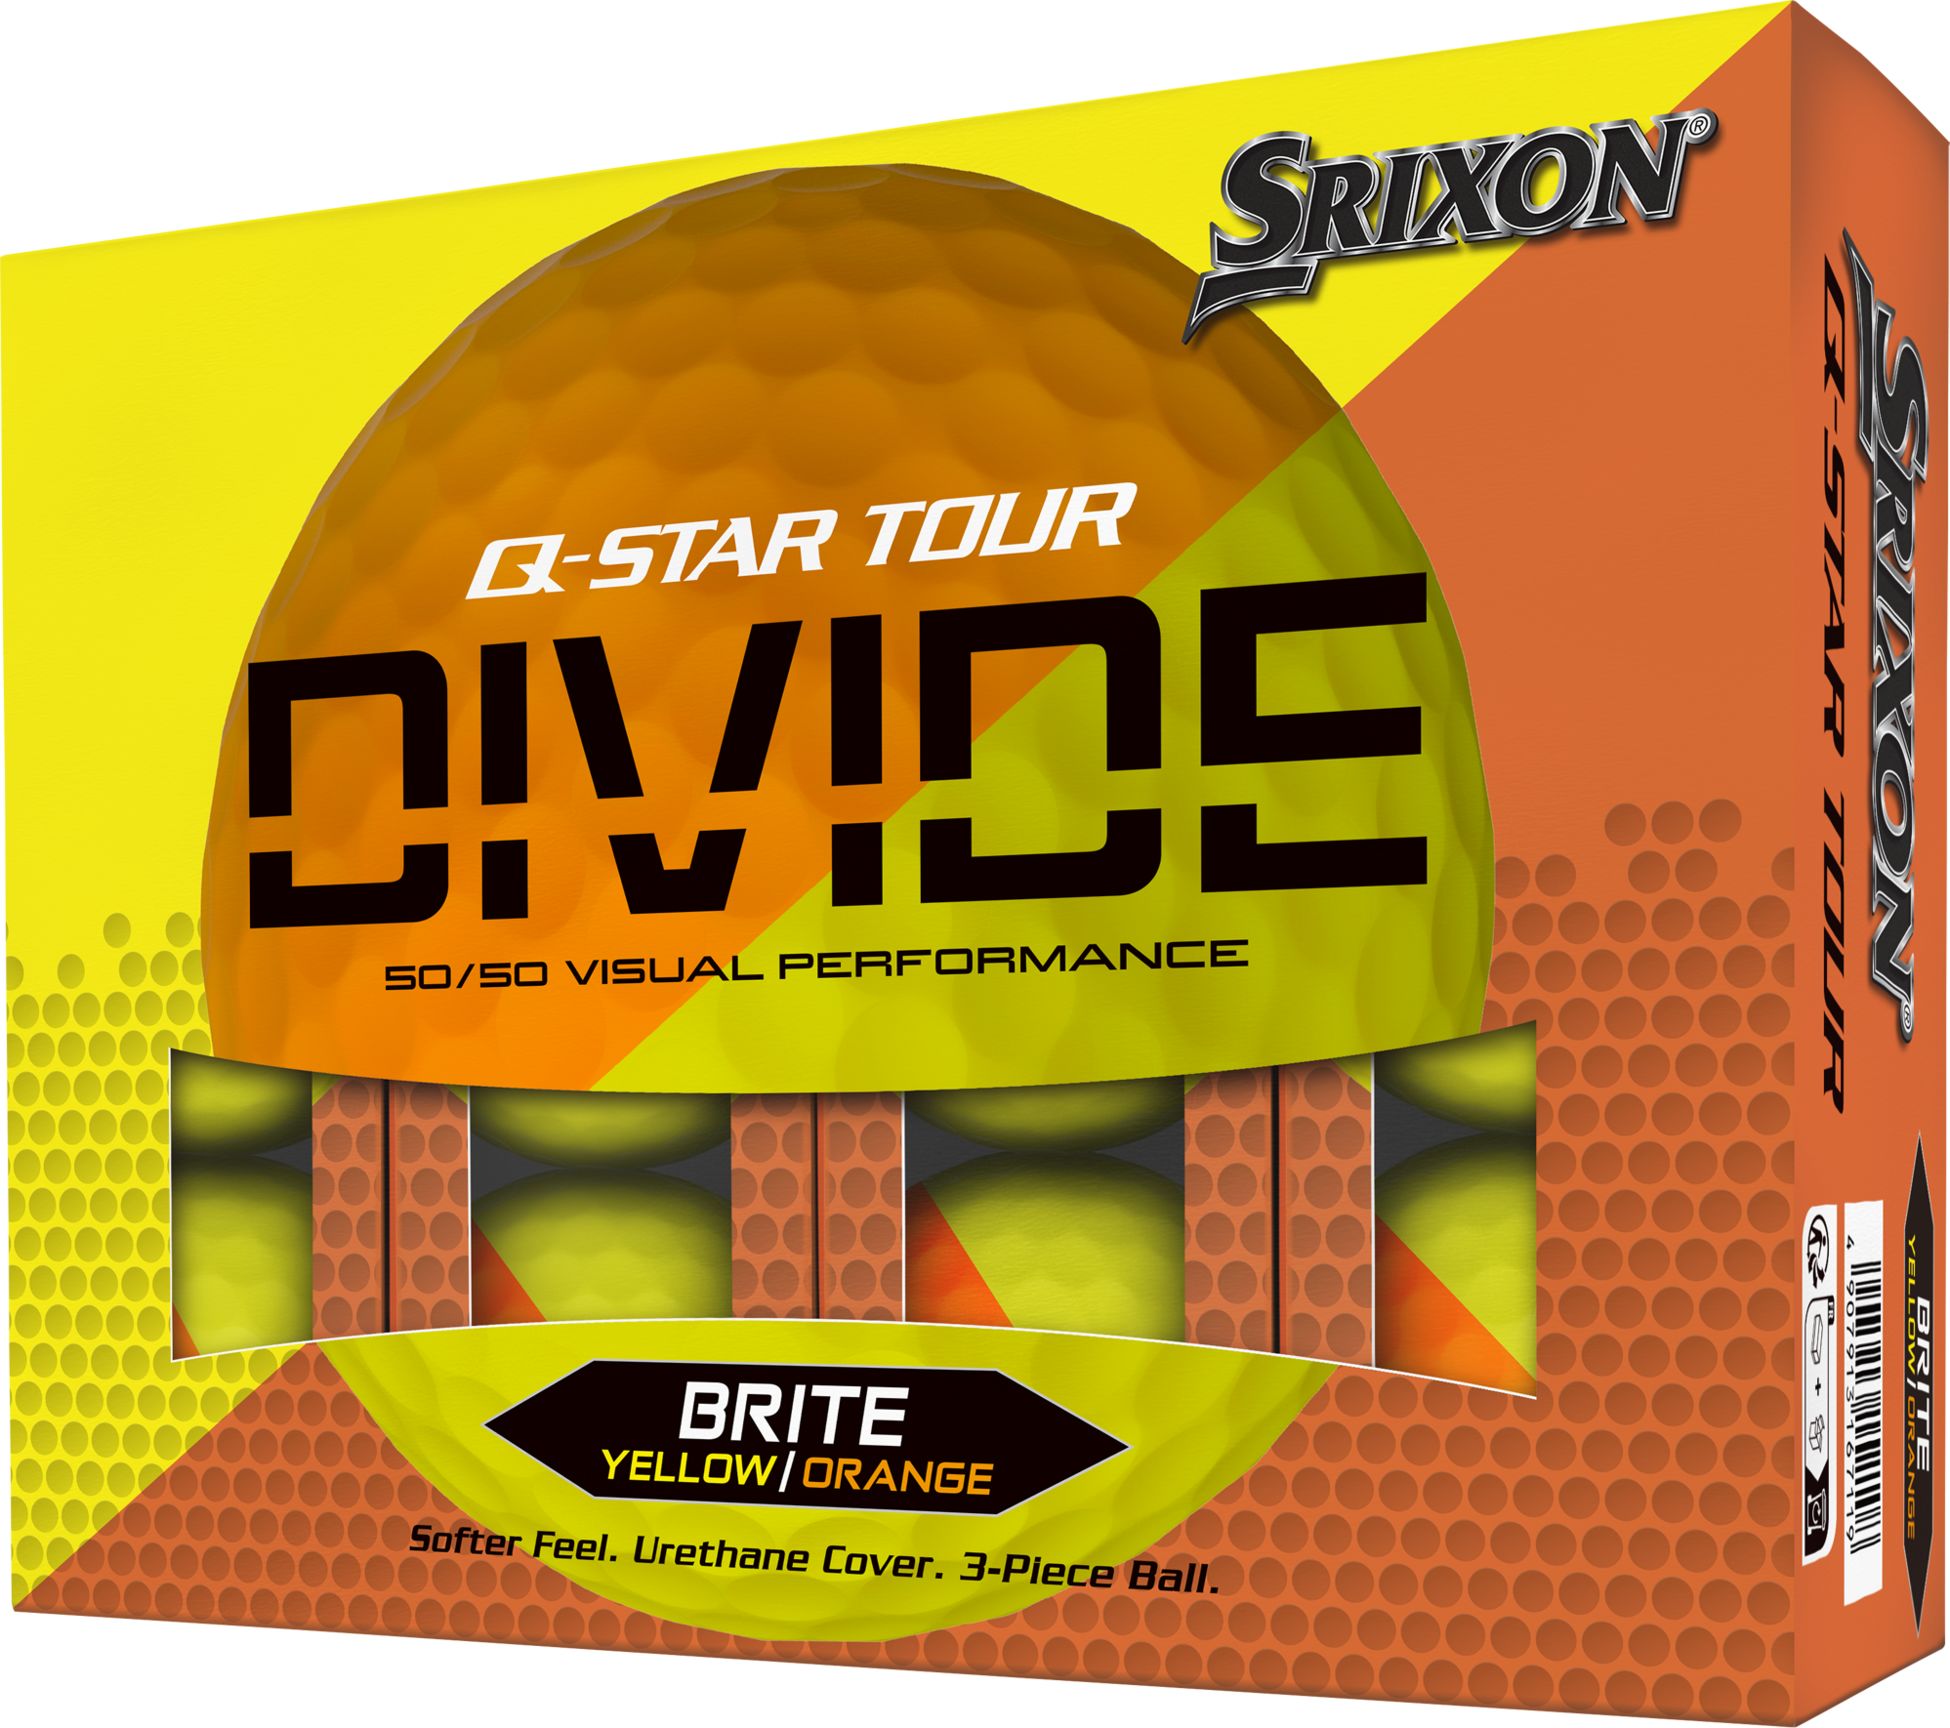 SRIXON, Q-STAR DIVIDE 2 DZ